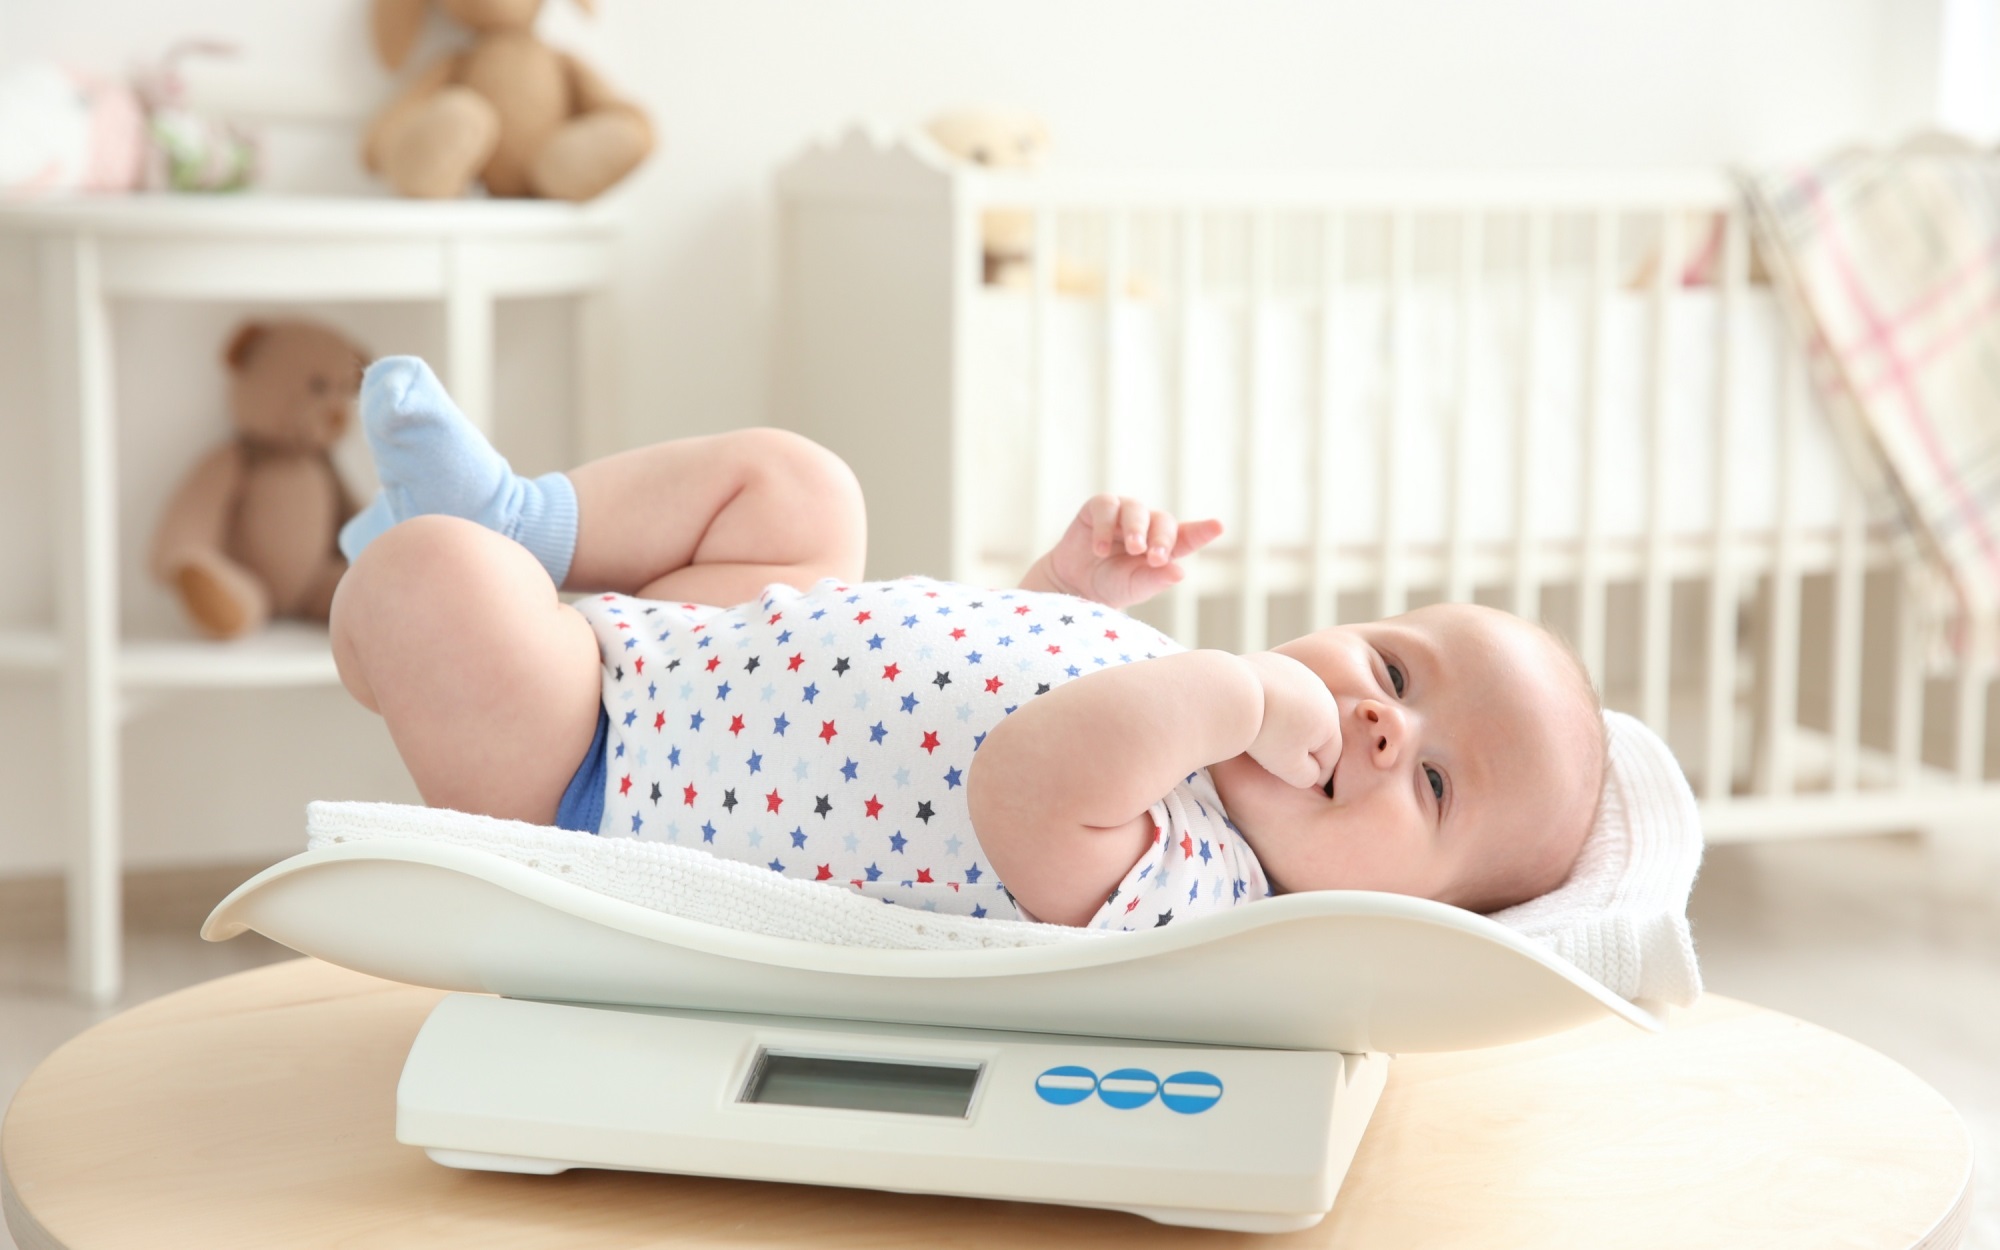 Mẹ thường lo con nhẹ cân ốm yếu? Làm cách nào để em bé nhà bạn tăng cân hiệu quả và an toàn? - Ảnh 1